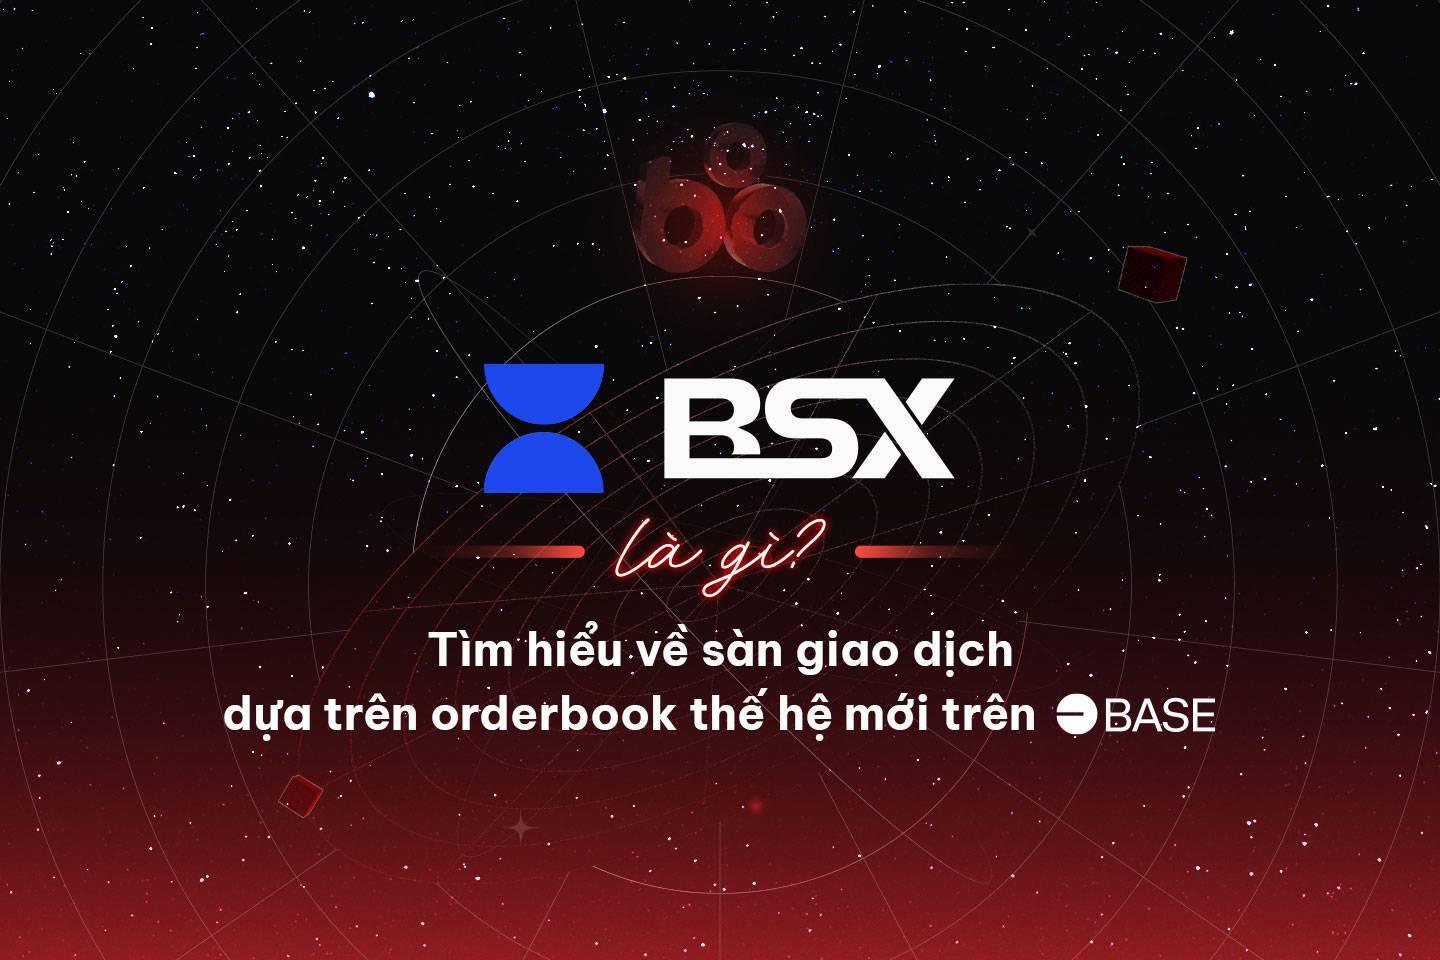 bsx-la-gi-tim-hieu-ve-san-giao-dich-dua-tren-orderbook-the-he-moi-tren-base